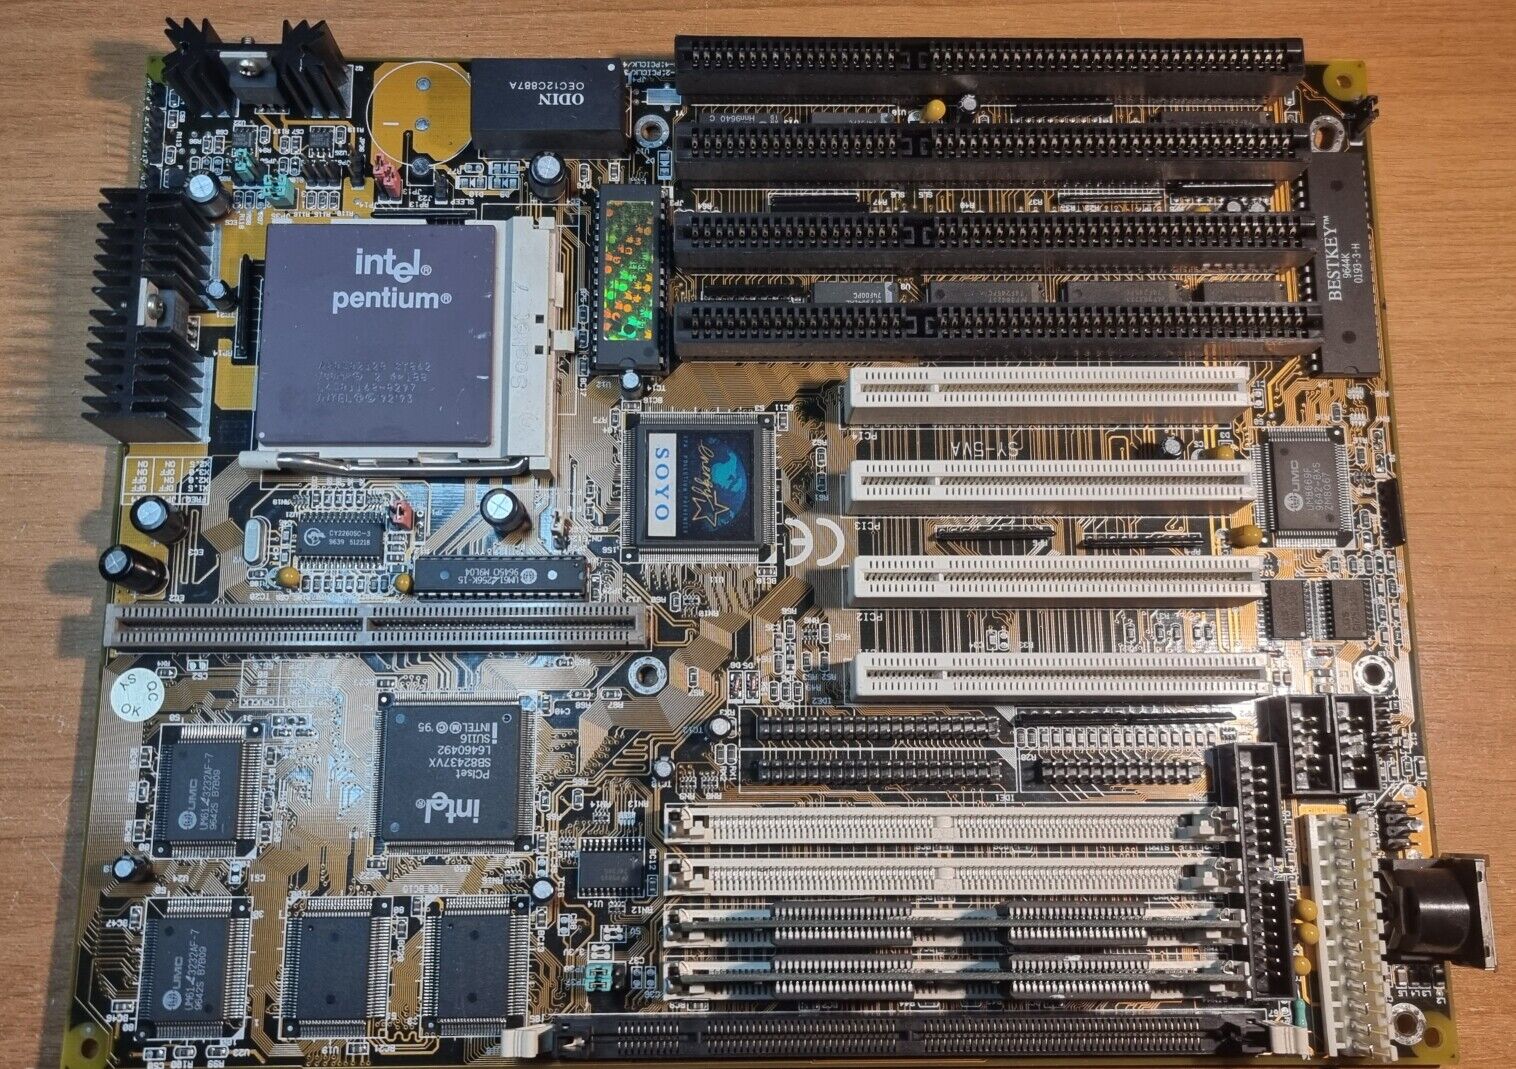 Soyo SY-5VA + Pentium 120MHz + 16MB ram